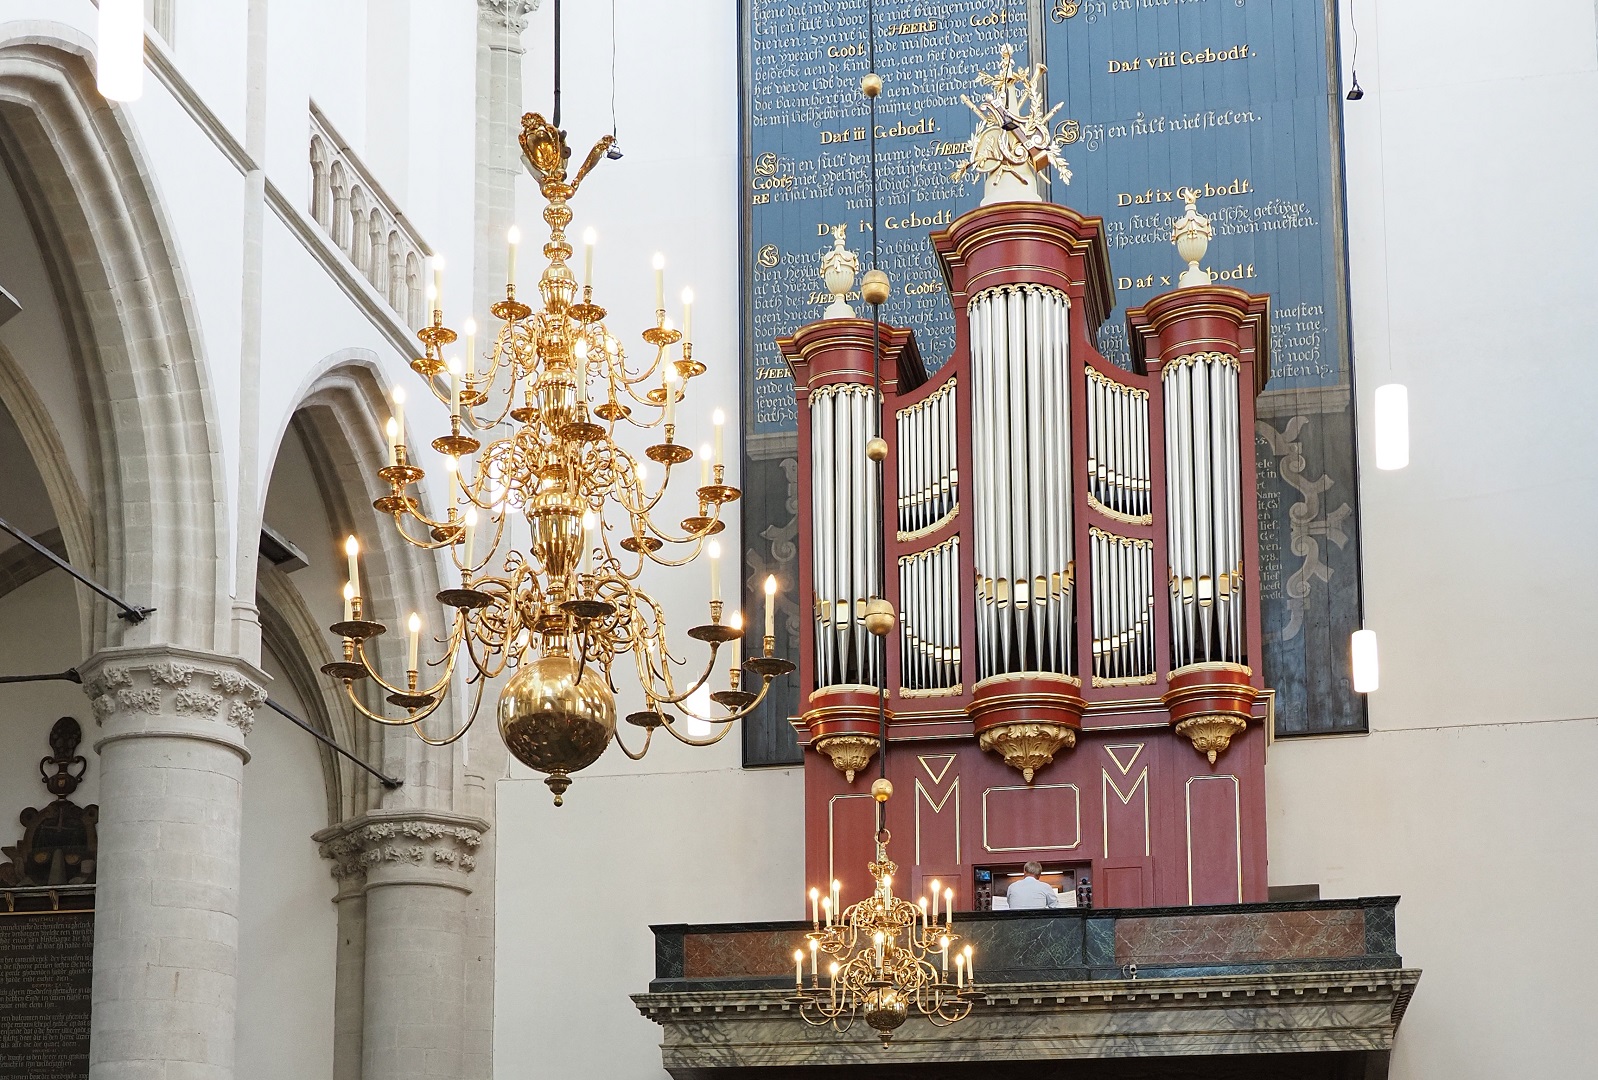 202009 Orgel & de kerkmuziek.jpg